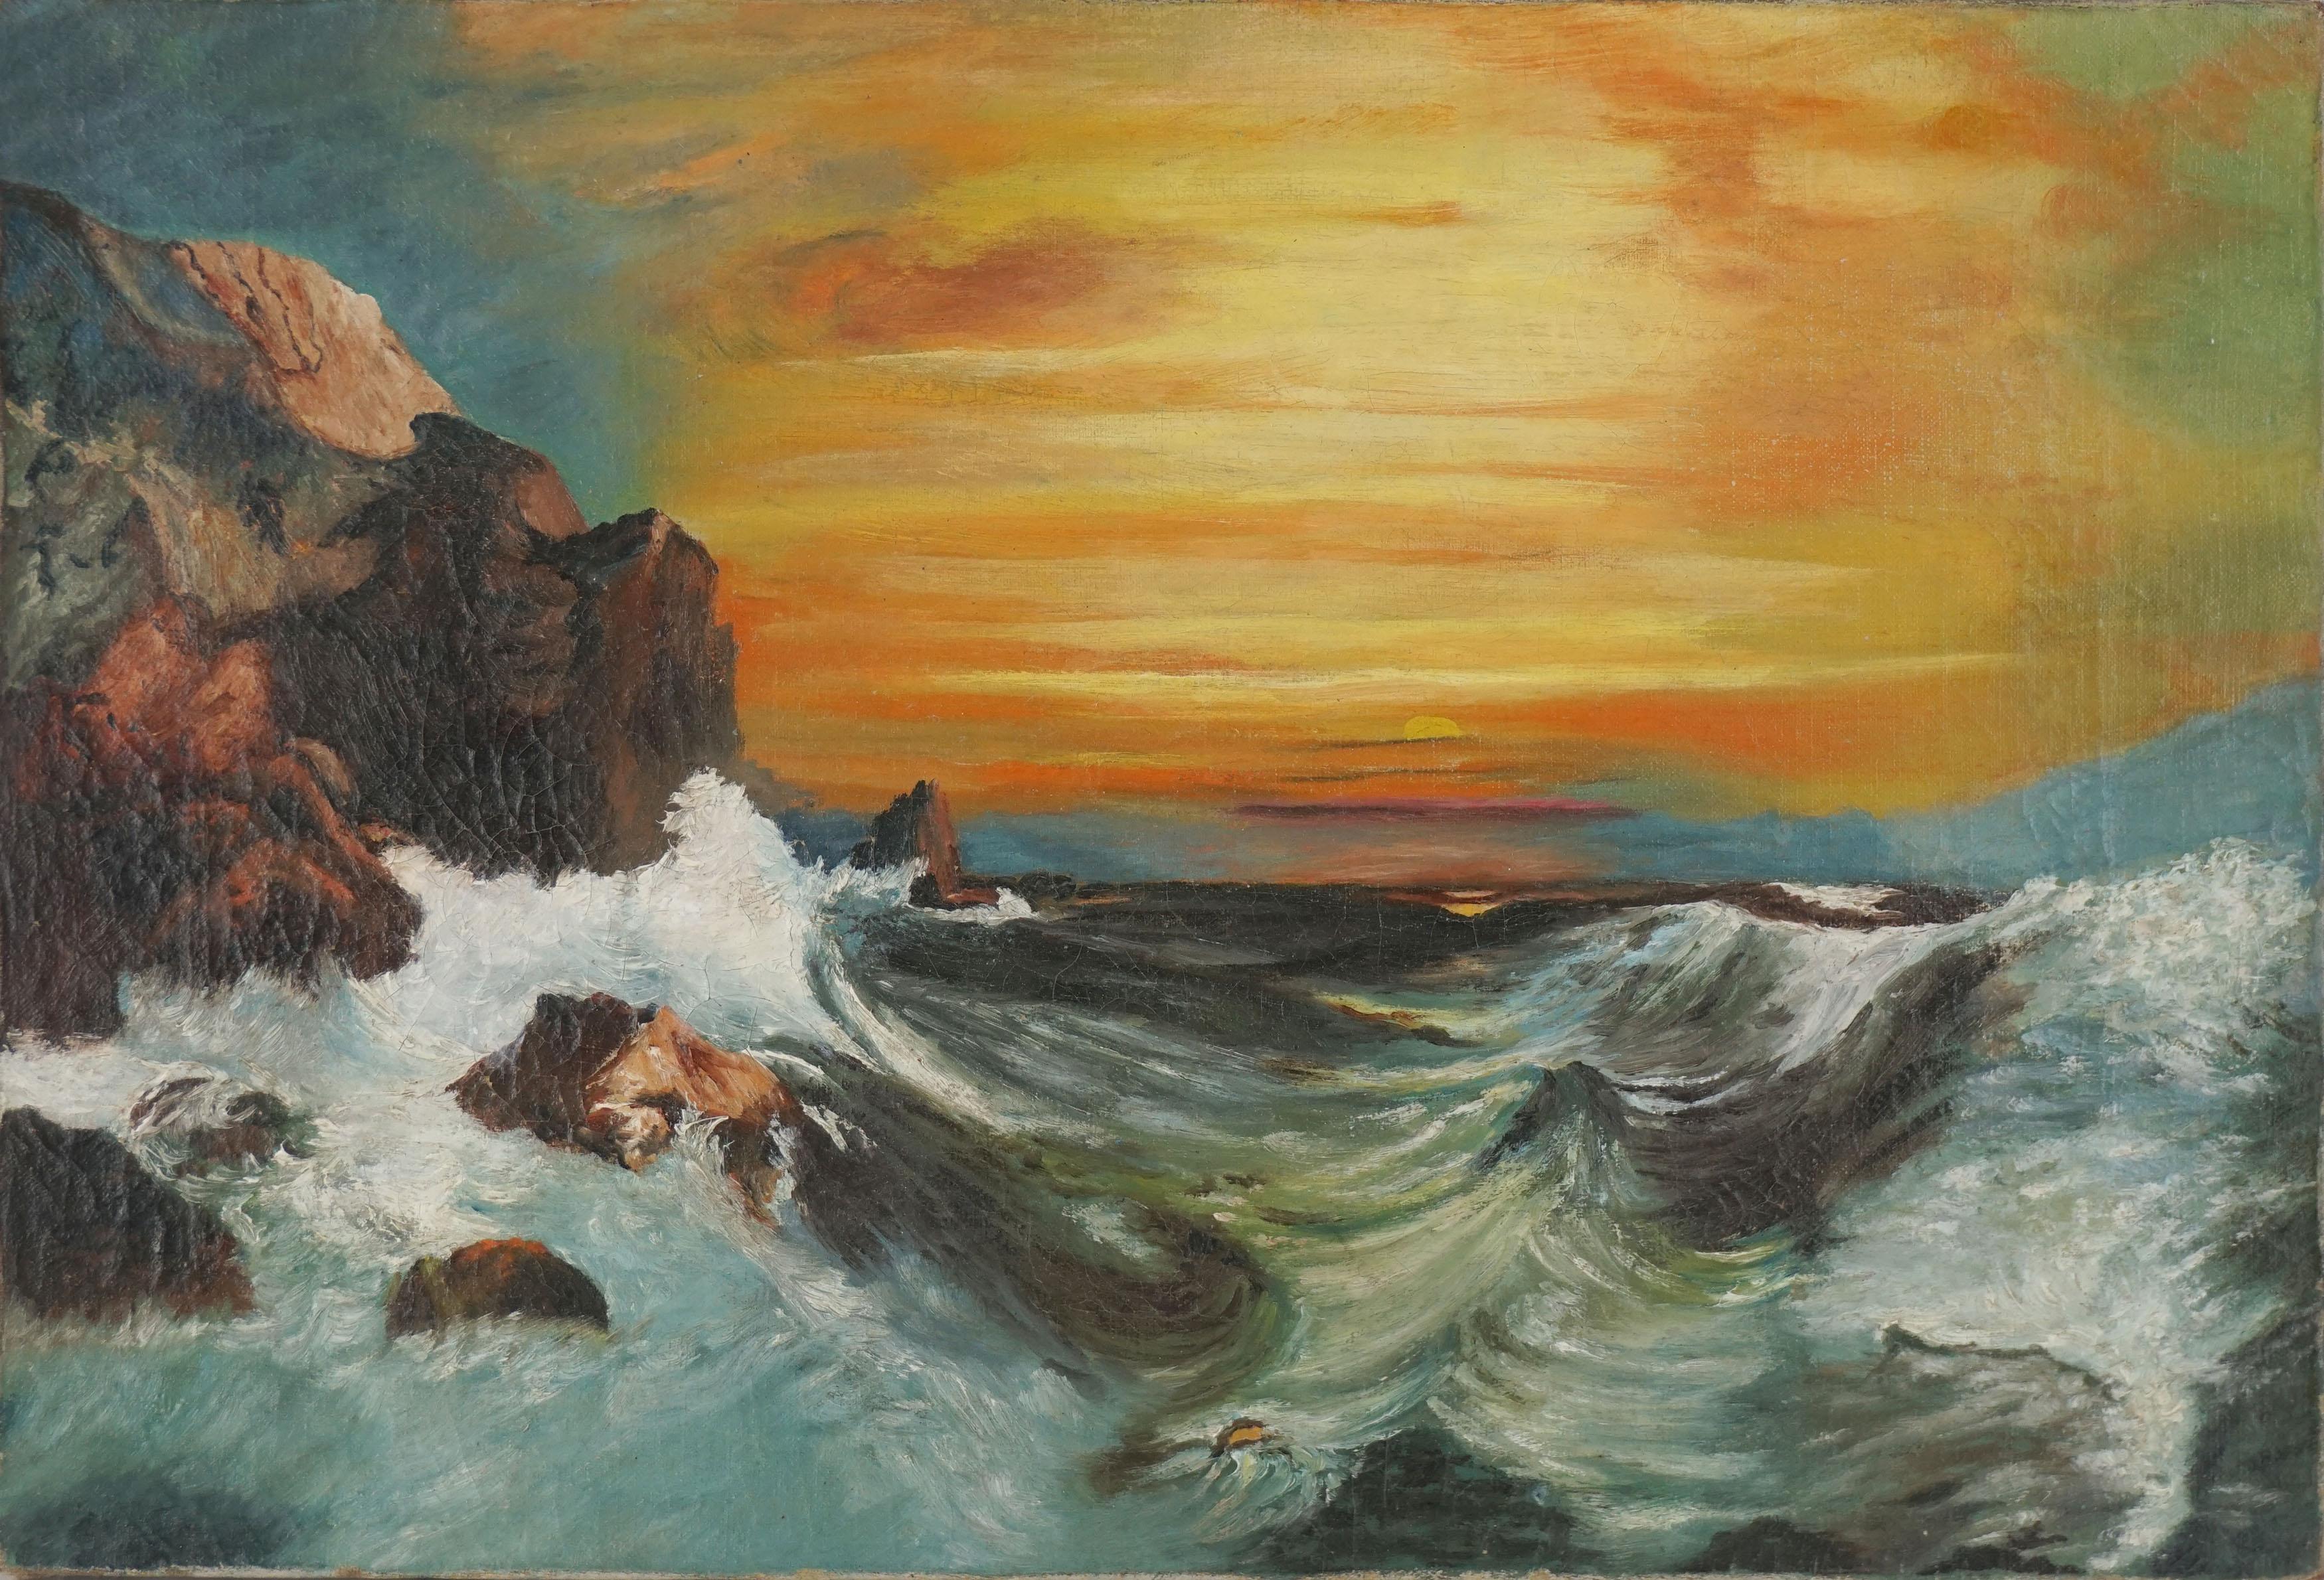 Landscape Painting Unknown - Début du 20e siècle Paysage marin au coucher de soleil vibrant 